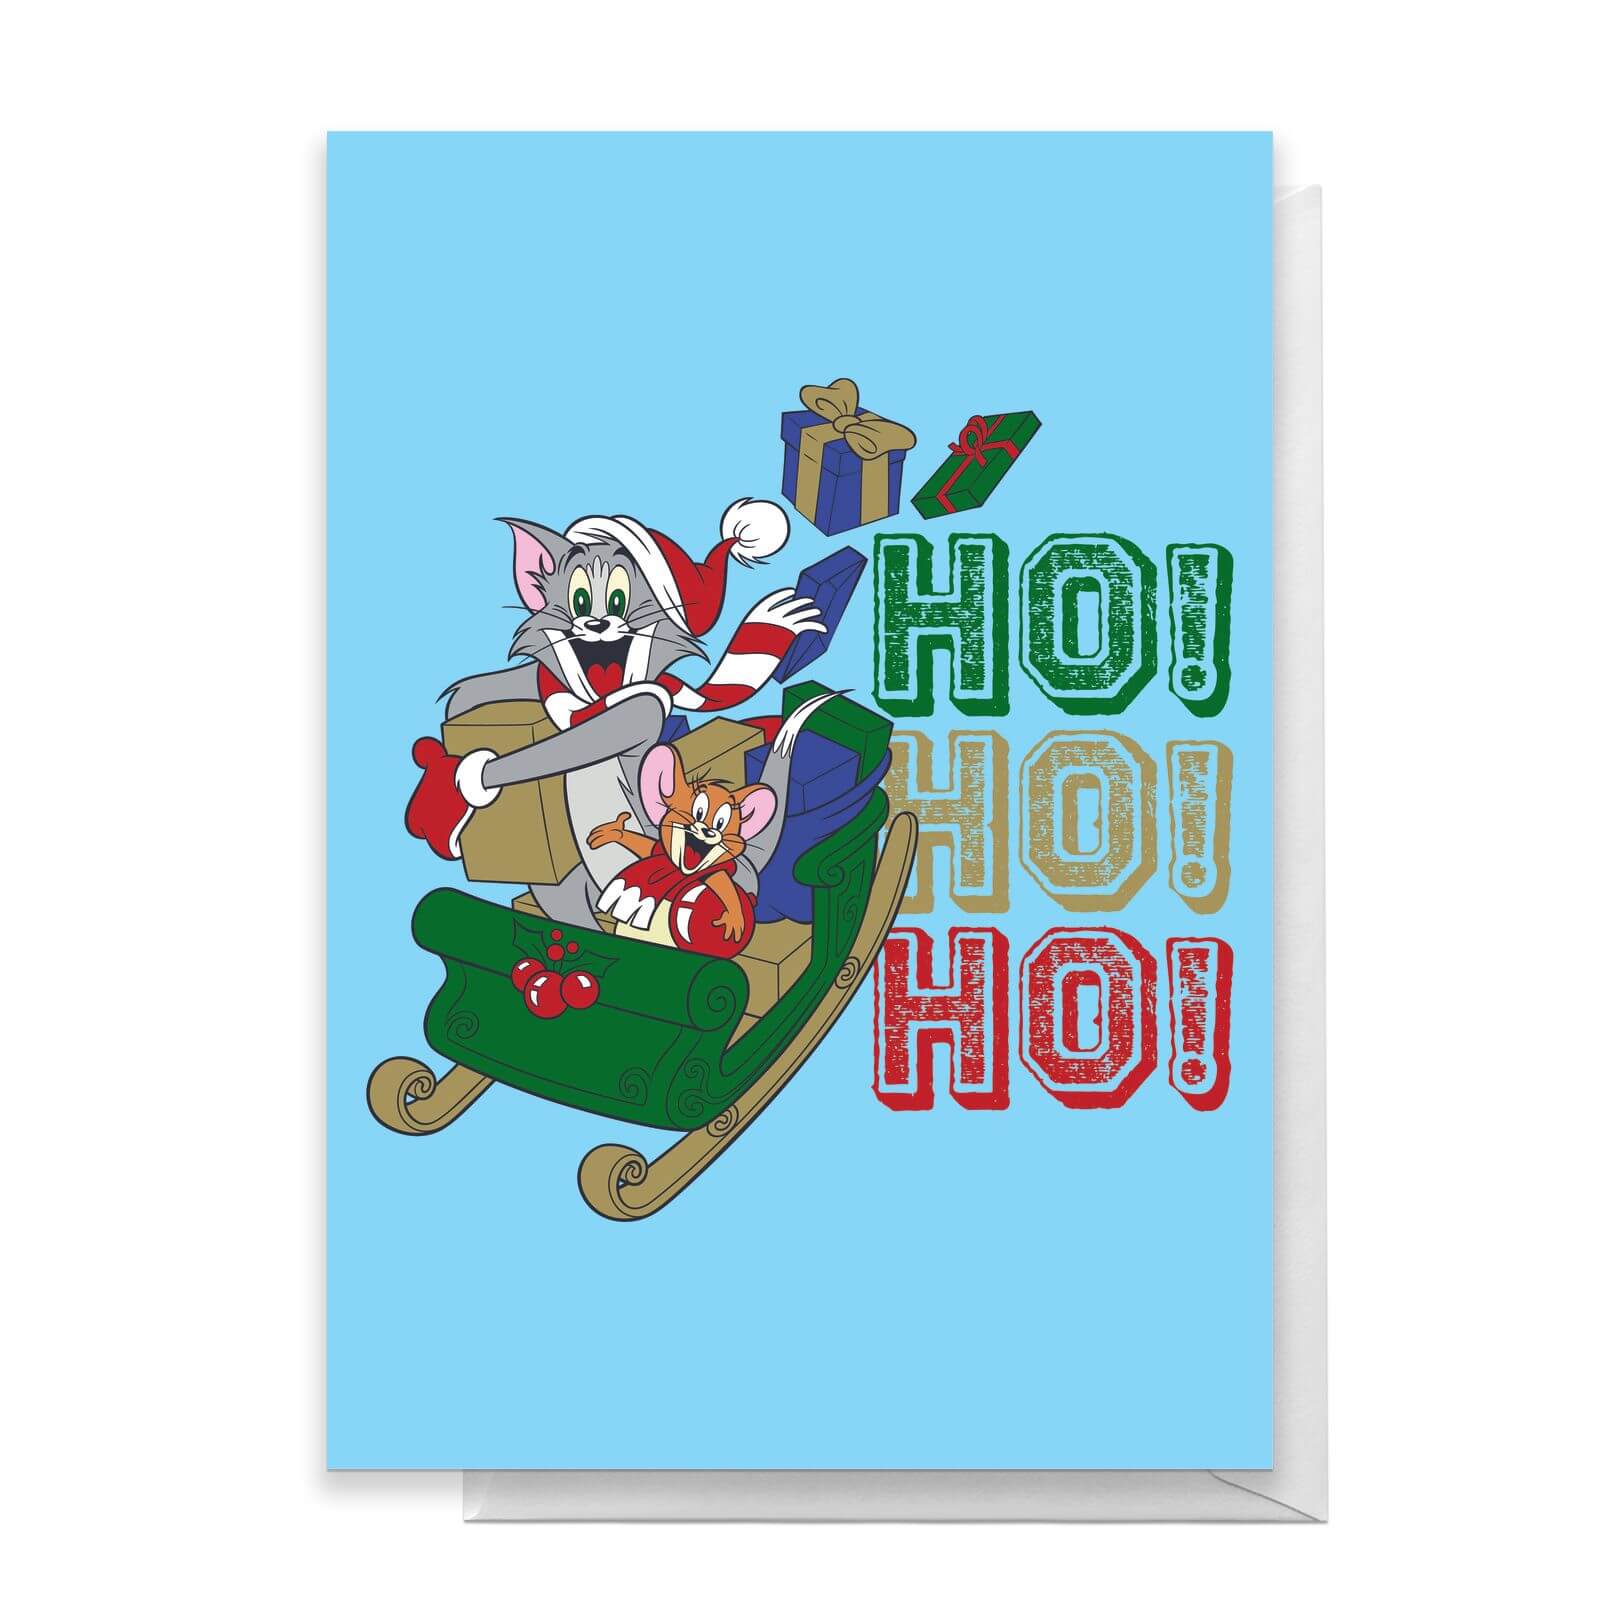 Tom And Jerry Sleigh Ho! Ho! Ho! Greetings Card - Standard Card